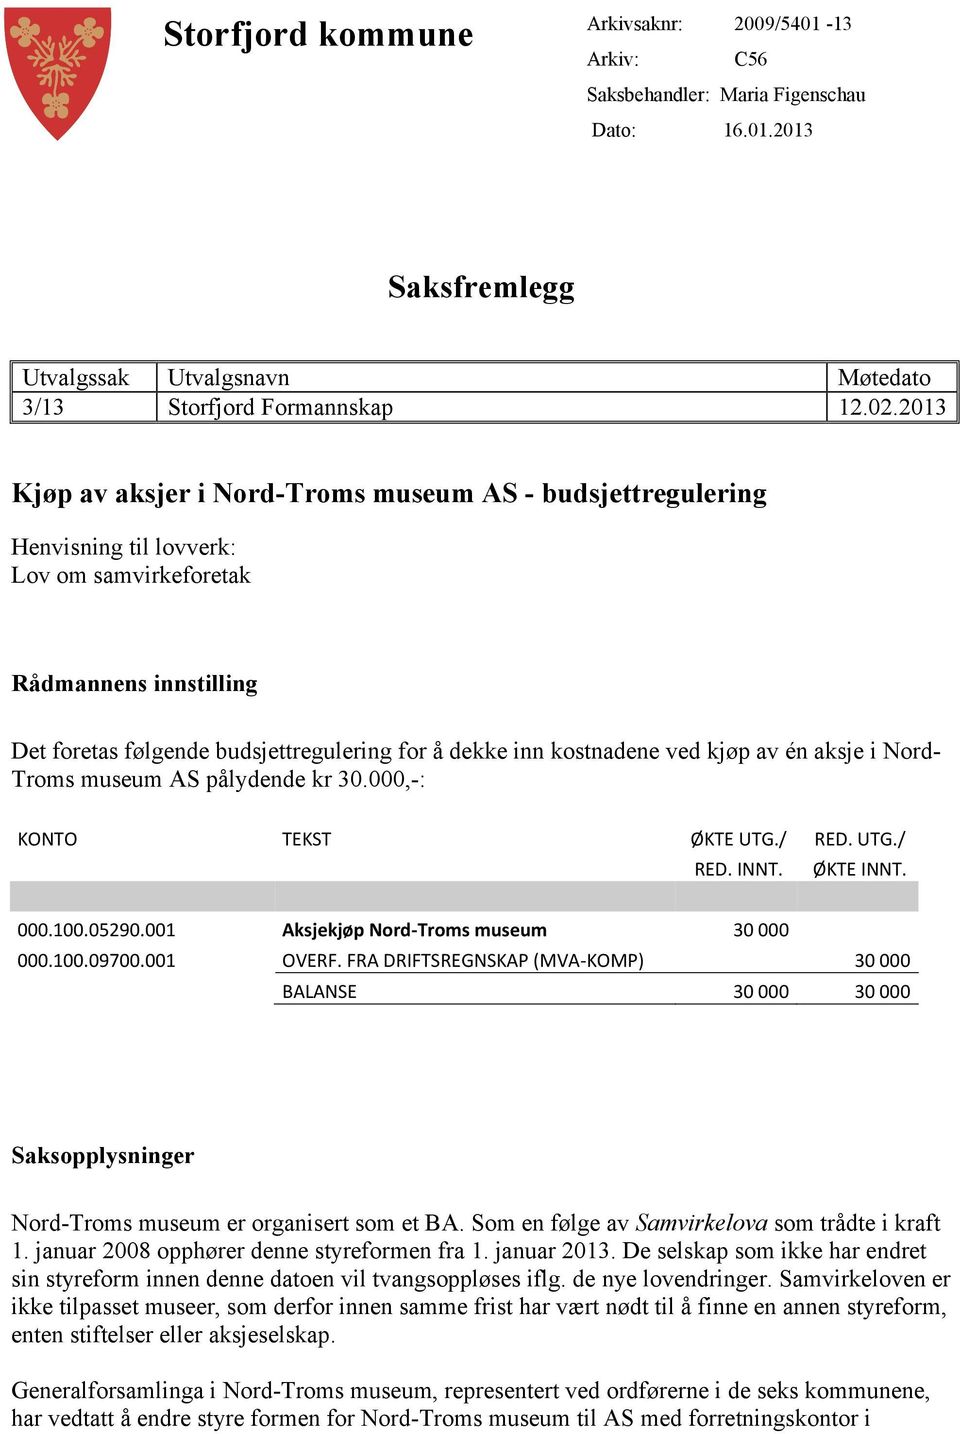 kostnadene ved kjøp av én aksje i Nord- Troms museum AS pålydende kr 30.000,-: KONTO TEKST ØKTE UTG./ RED. UTG./ RED. INNT. ØKTE INNT. 000.100.05290.001 Aksjekjøp Nord-Troms museum 30 000 000.100.09700.